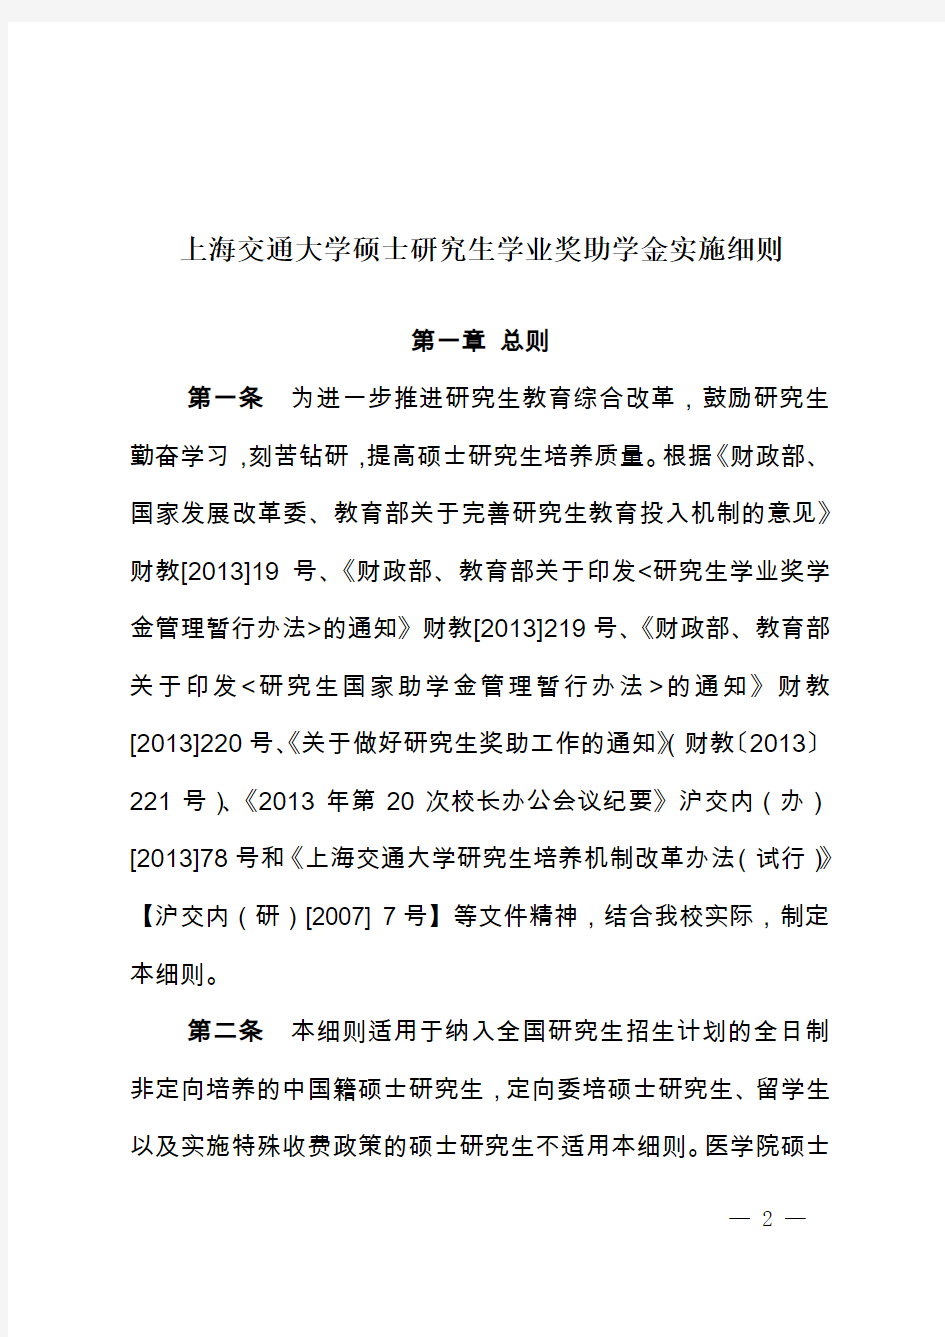 上海交通大学硕士研究生学业奖助学金实施细则